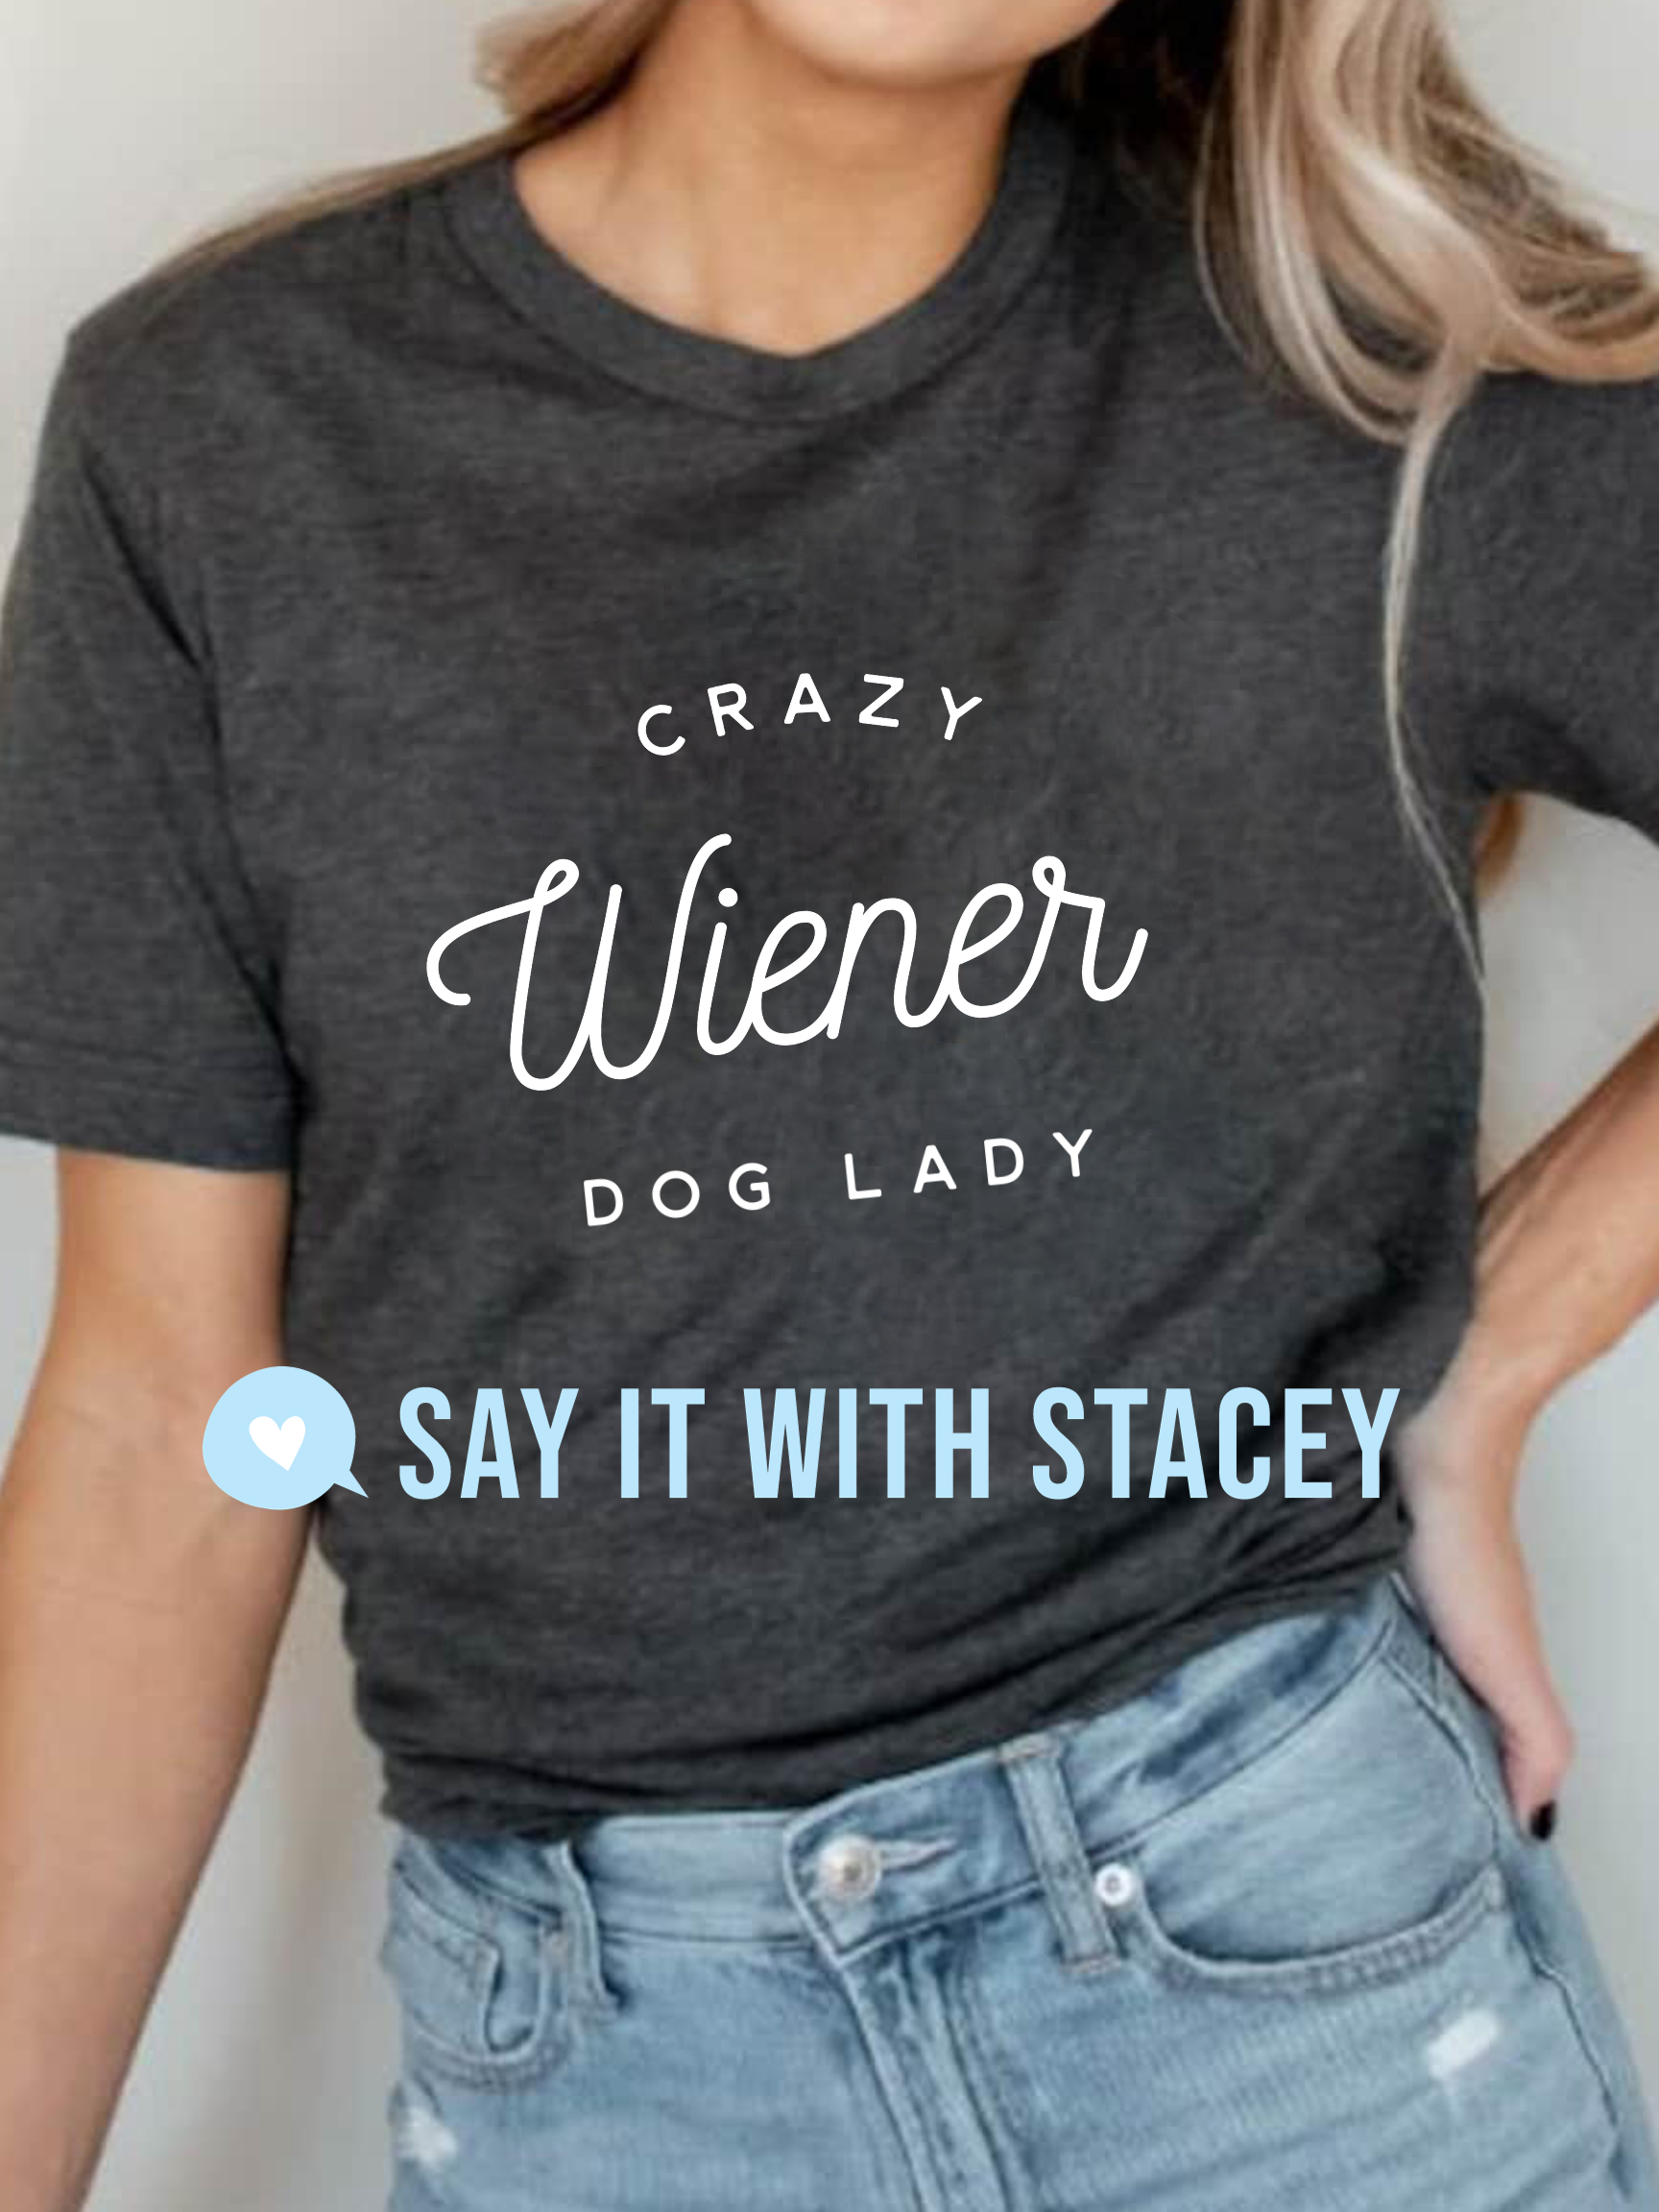 Crazy Wiener Dog Lady TShirt